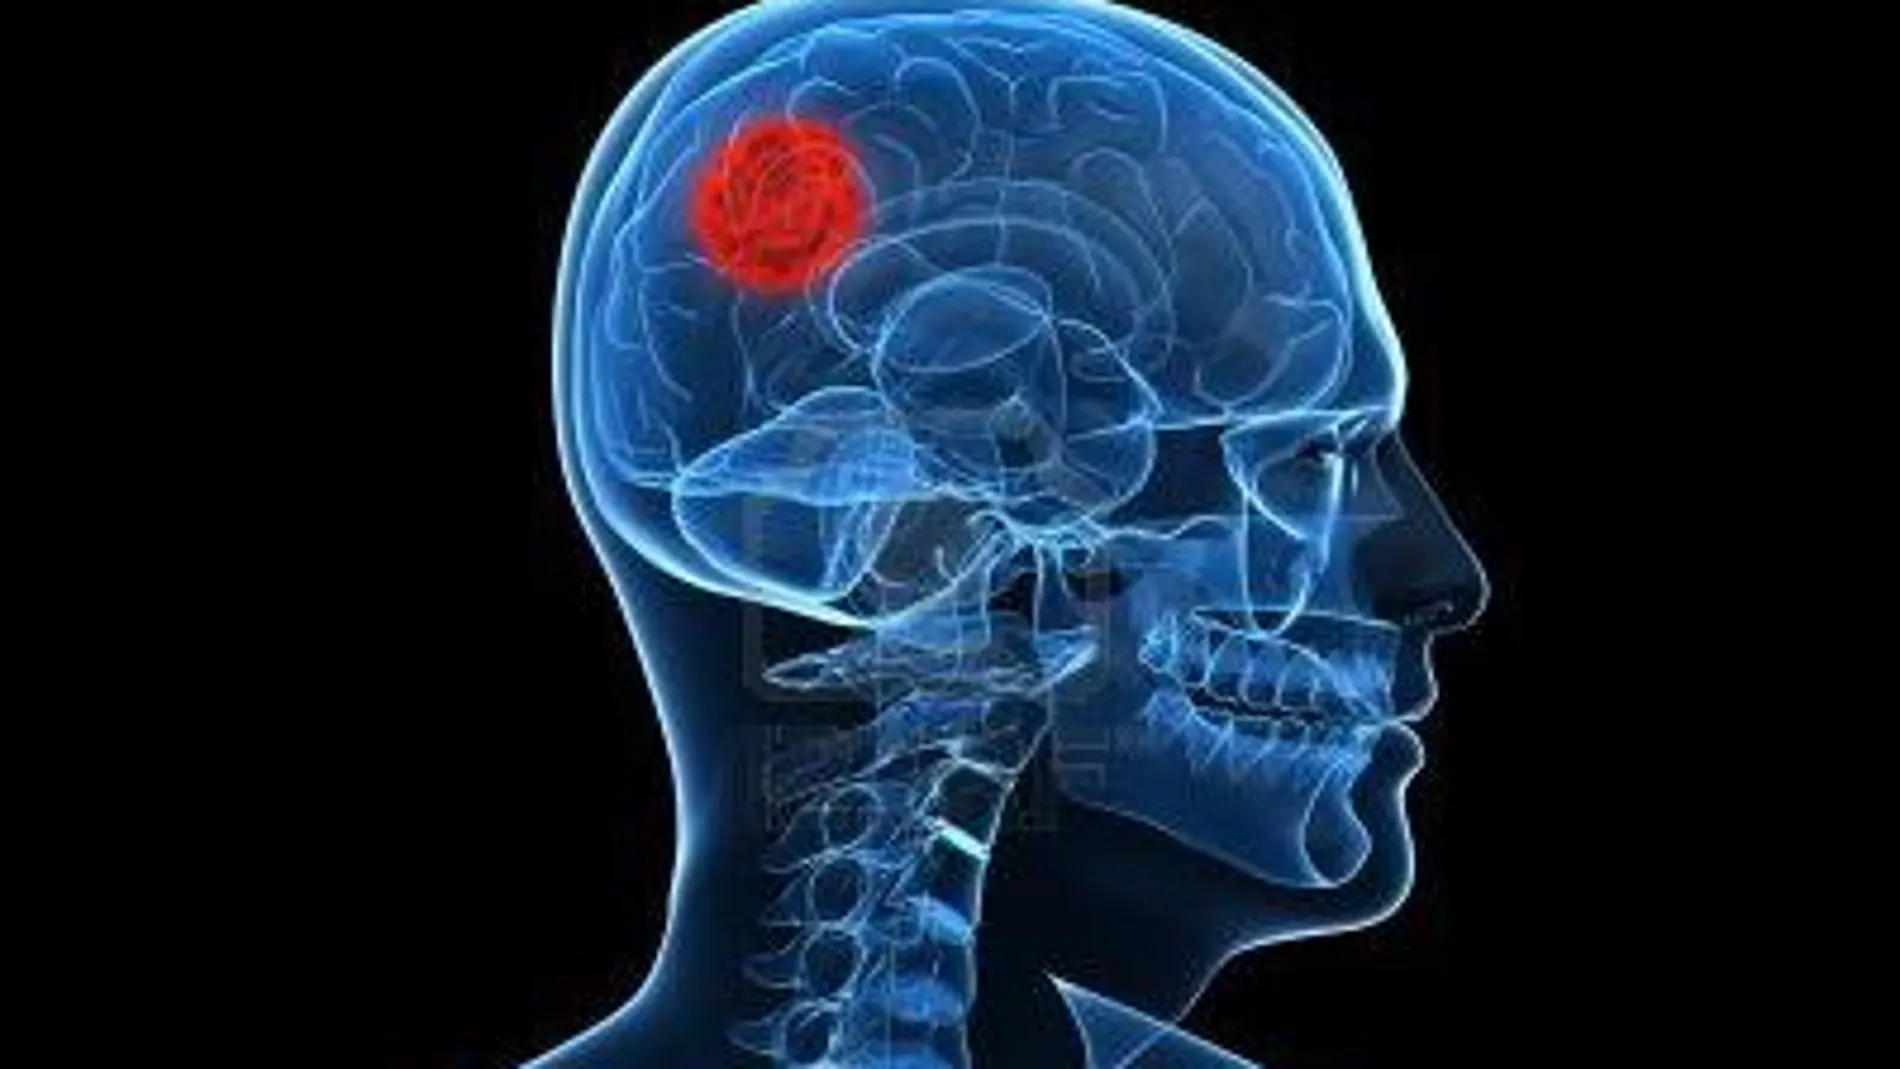 Los gliomas son un tipo de tumor cerebral que se origina en las células gliales del sistema nervioso central (cerebro y médula espinal),